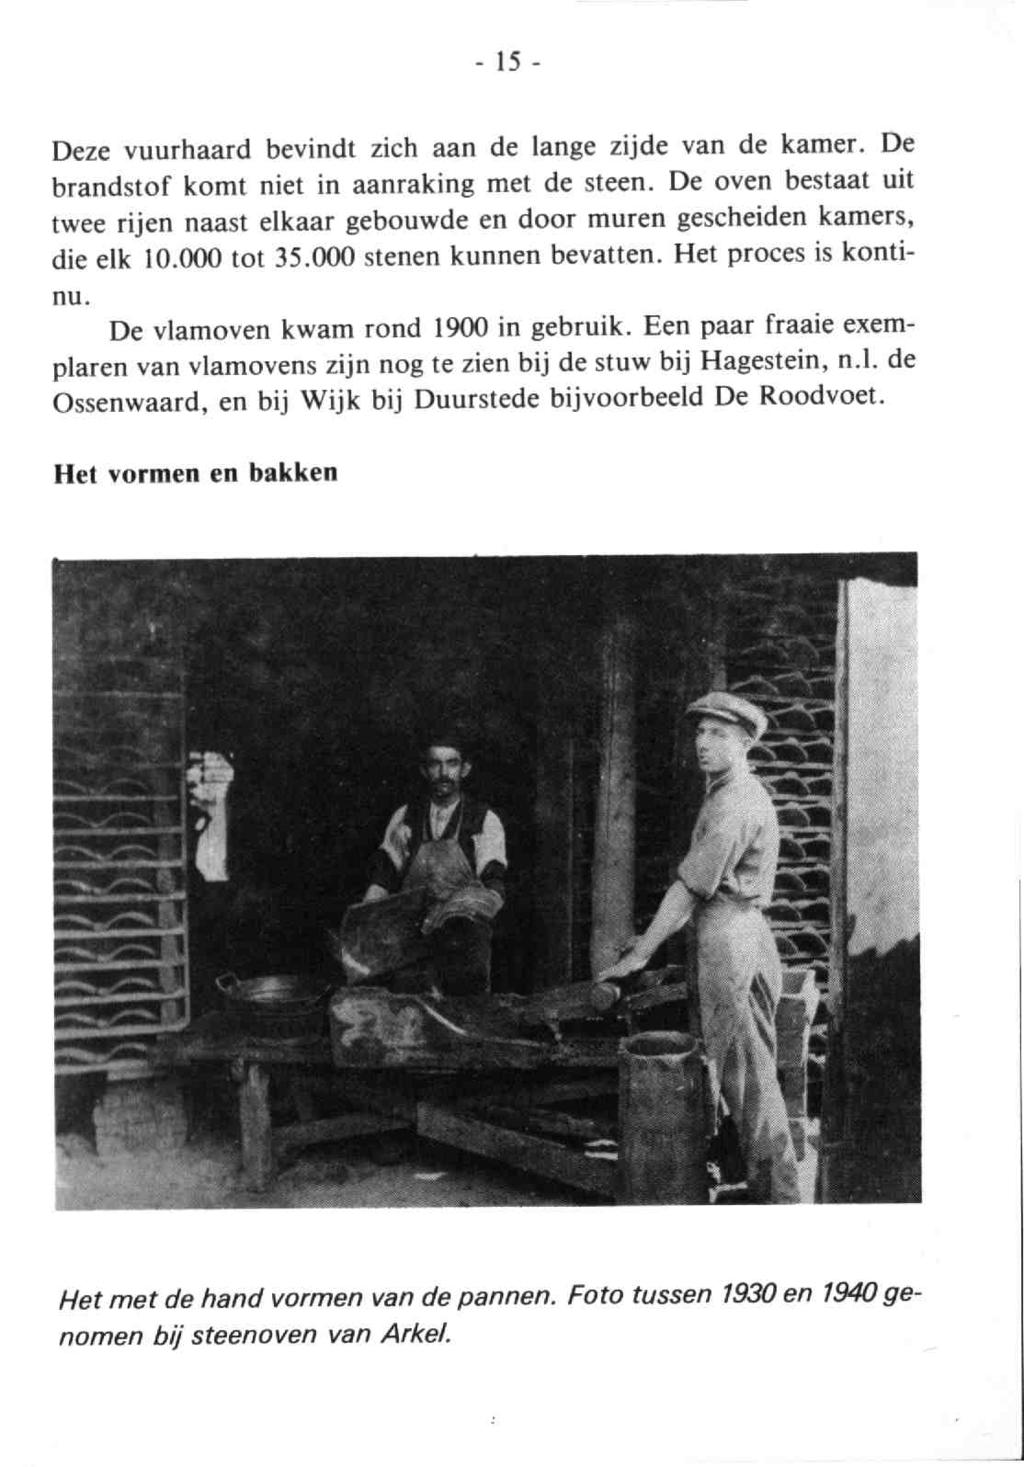 Tussen Rijn en Lek 1981 2. - Dl.15 2 15 - Deze vuurhaard bevindt zich aan de lange zijde van de kamer. Debrandstof komt niet in aanraking met de steen.